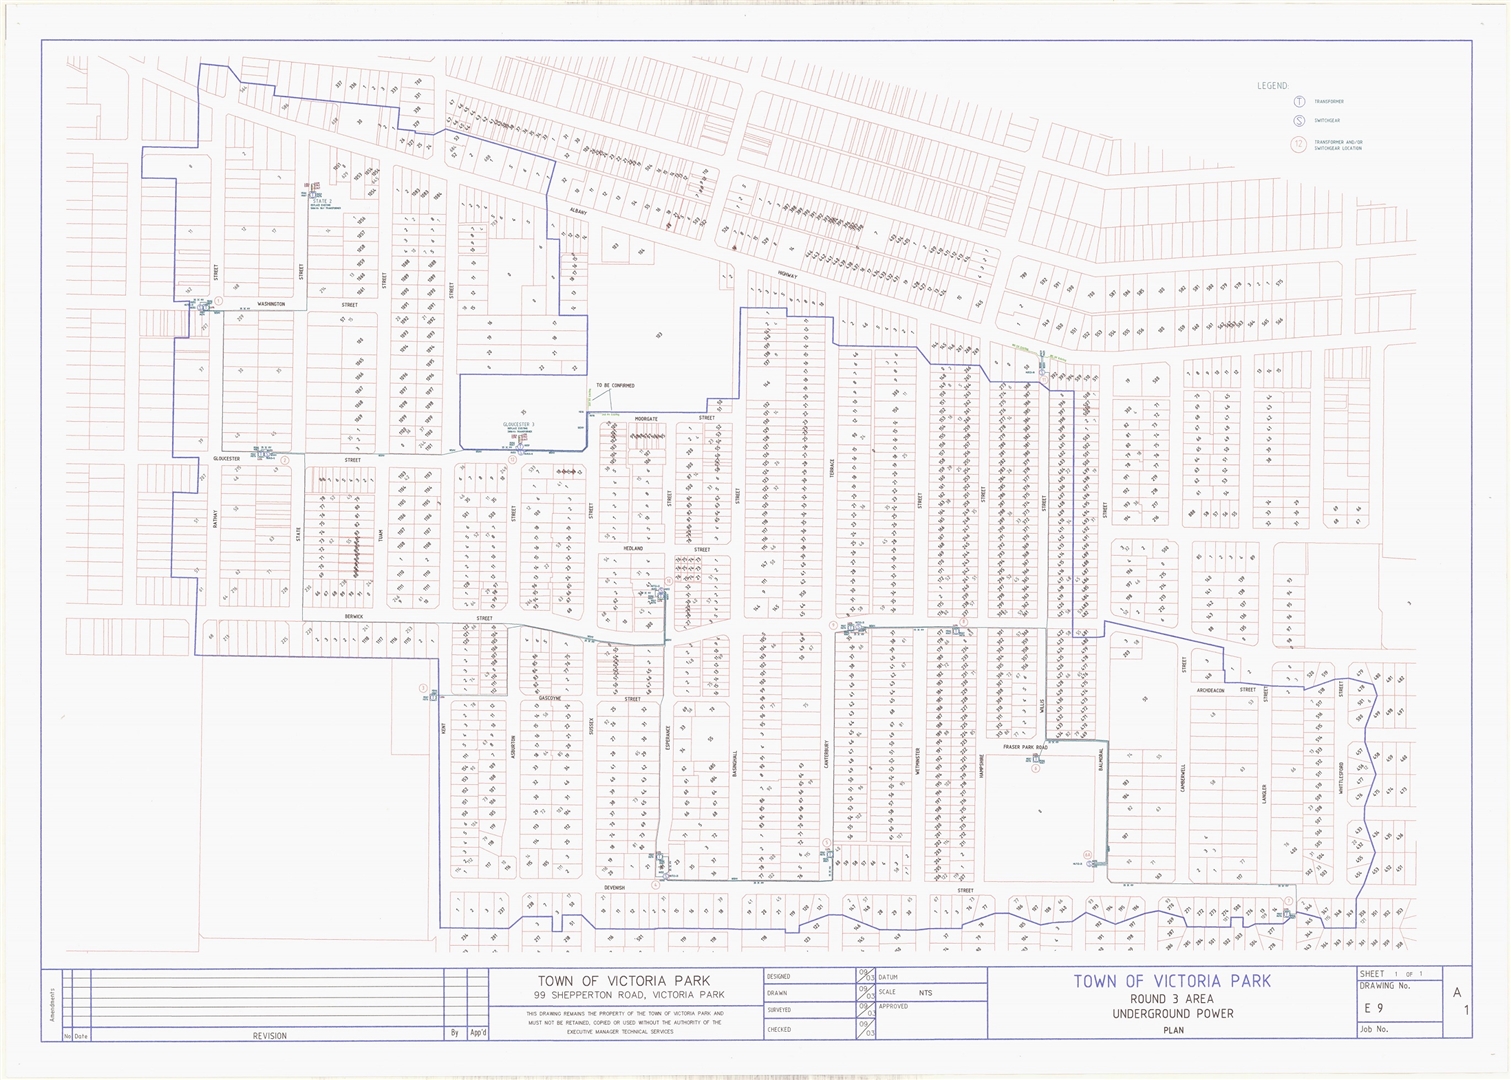 Town of Victoria Park - Round 3 Area Underground Power Plan Image